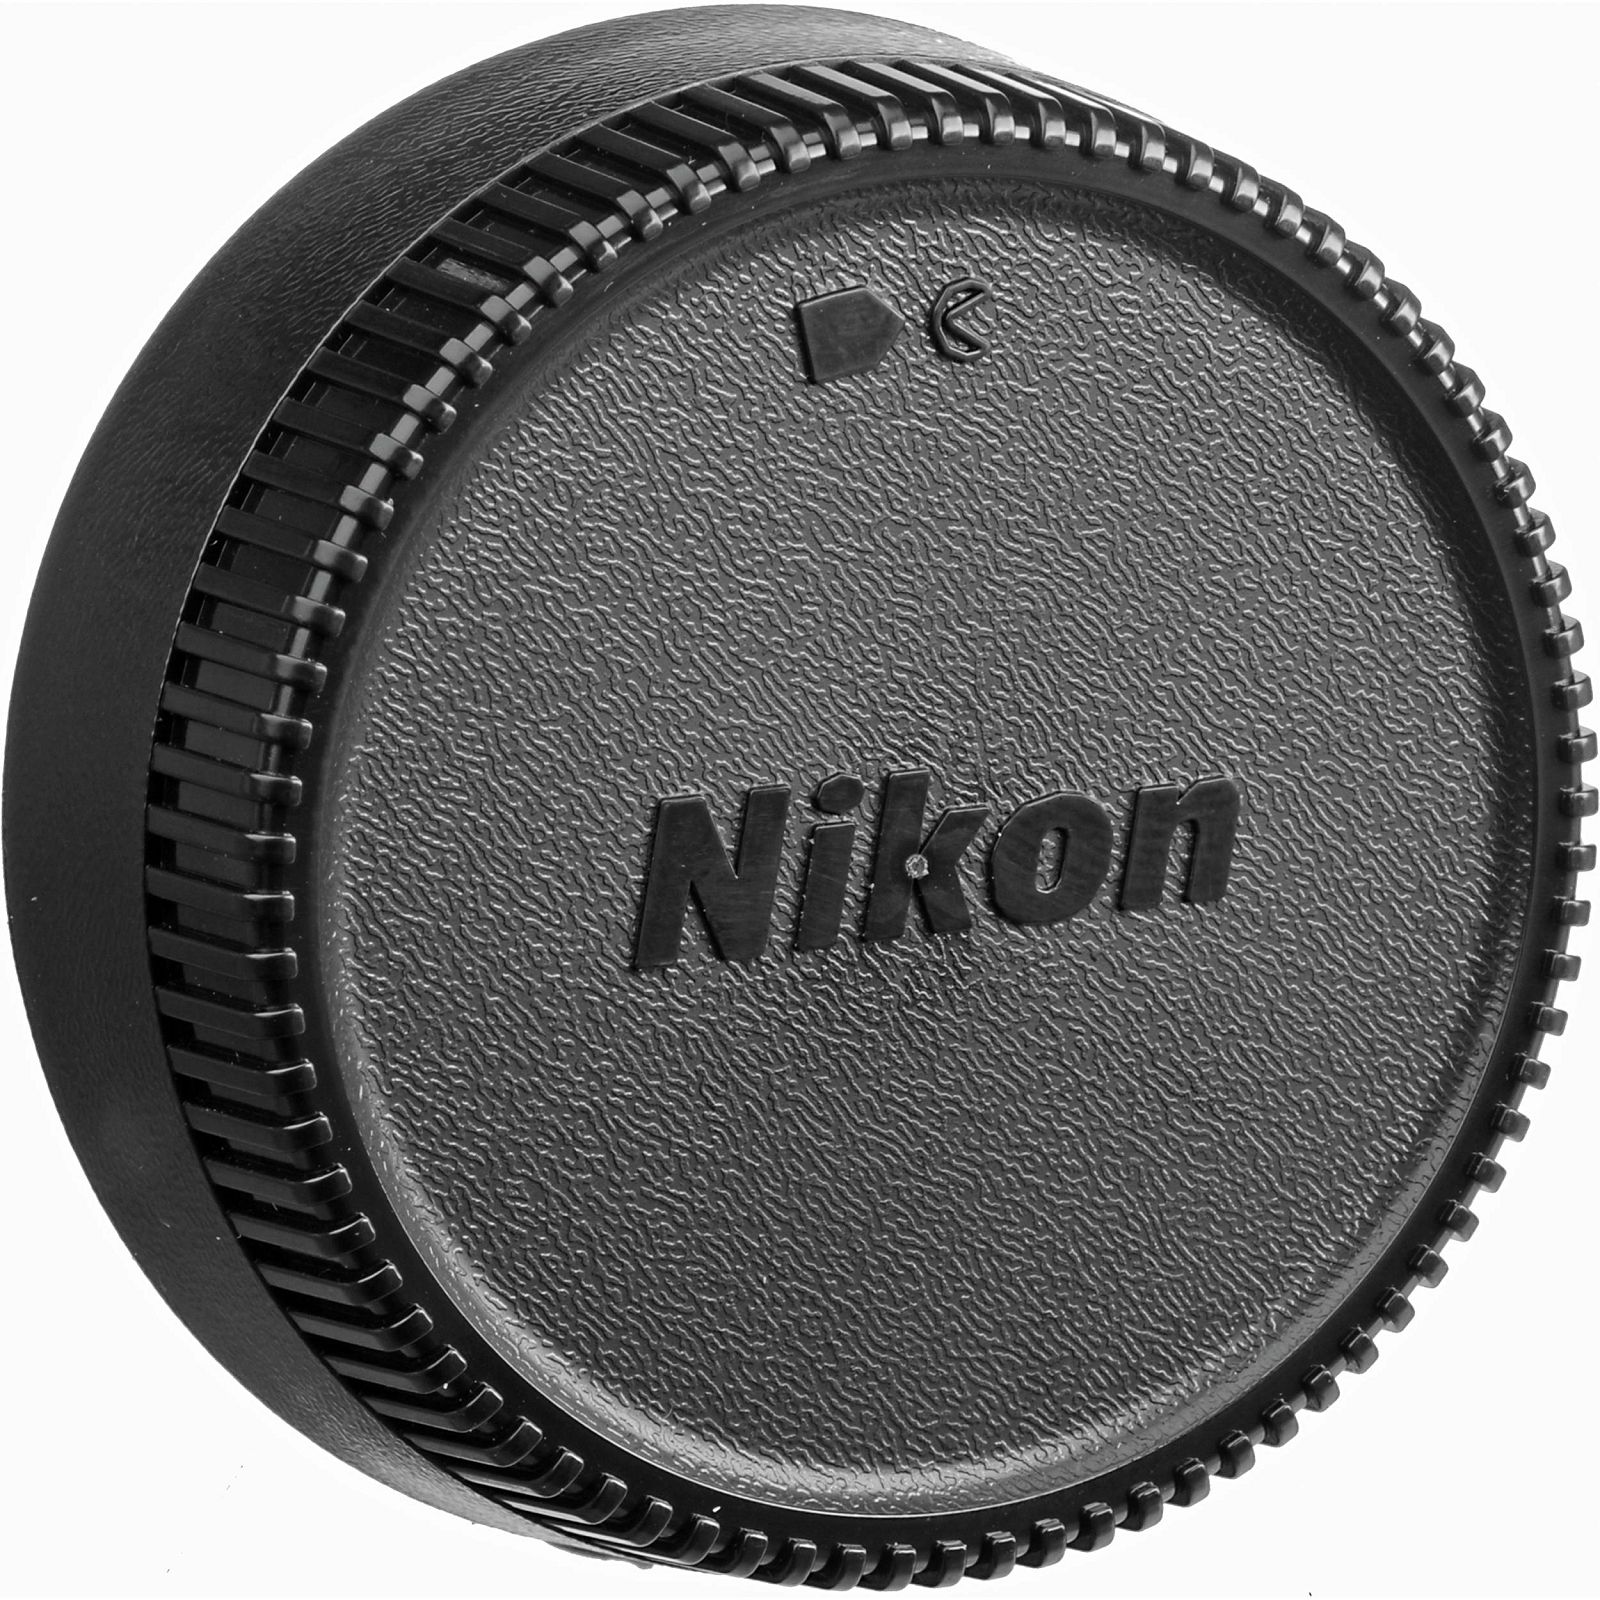 Nikon AI 55mm f/2.8 Micro FX 1:1 Macro objektiv fiksne žarišne duljine s ručnim fokusiranjem Nikkor 55 F2.8 2.8 manual focus prime lens (JAA616AB)